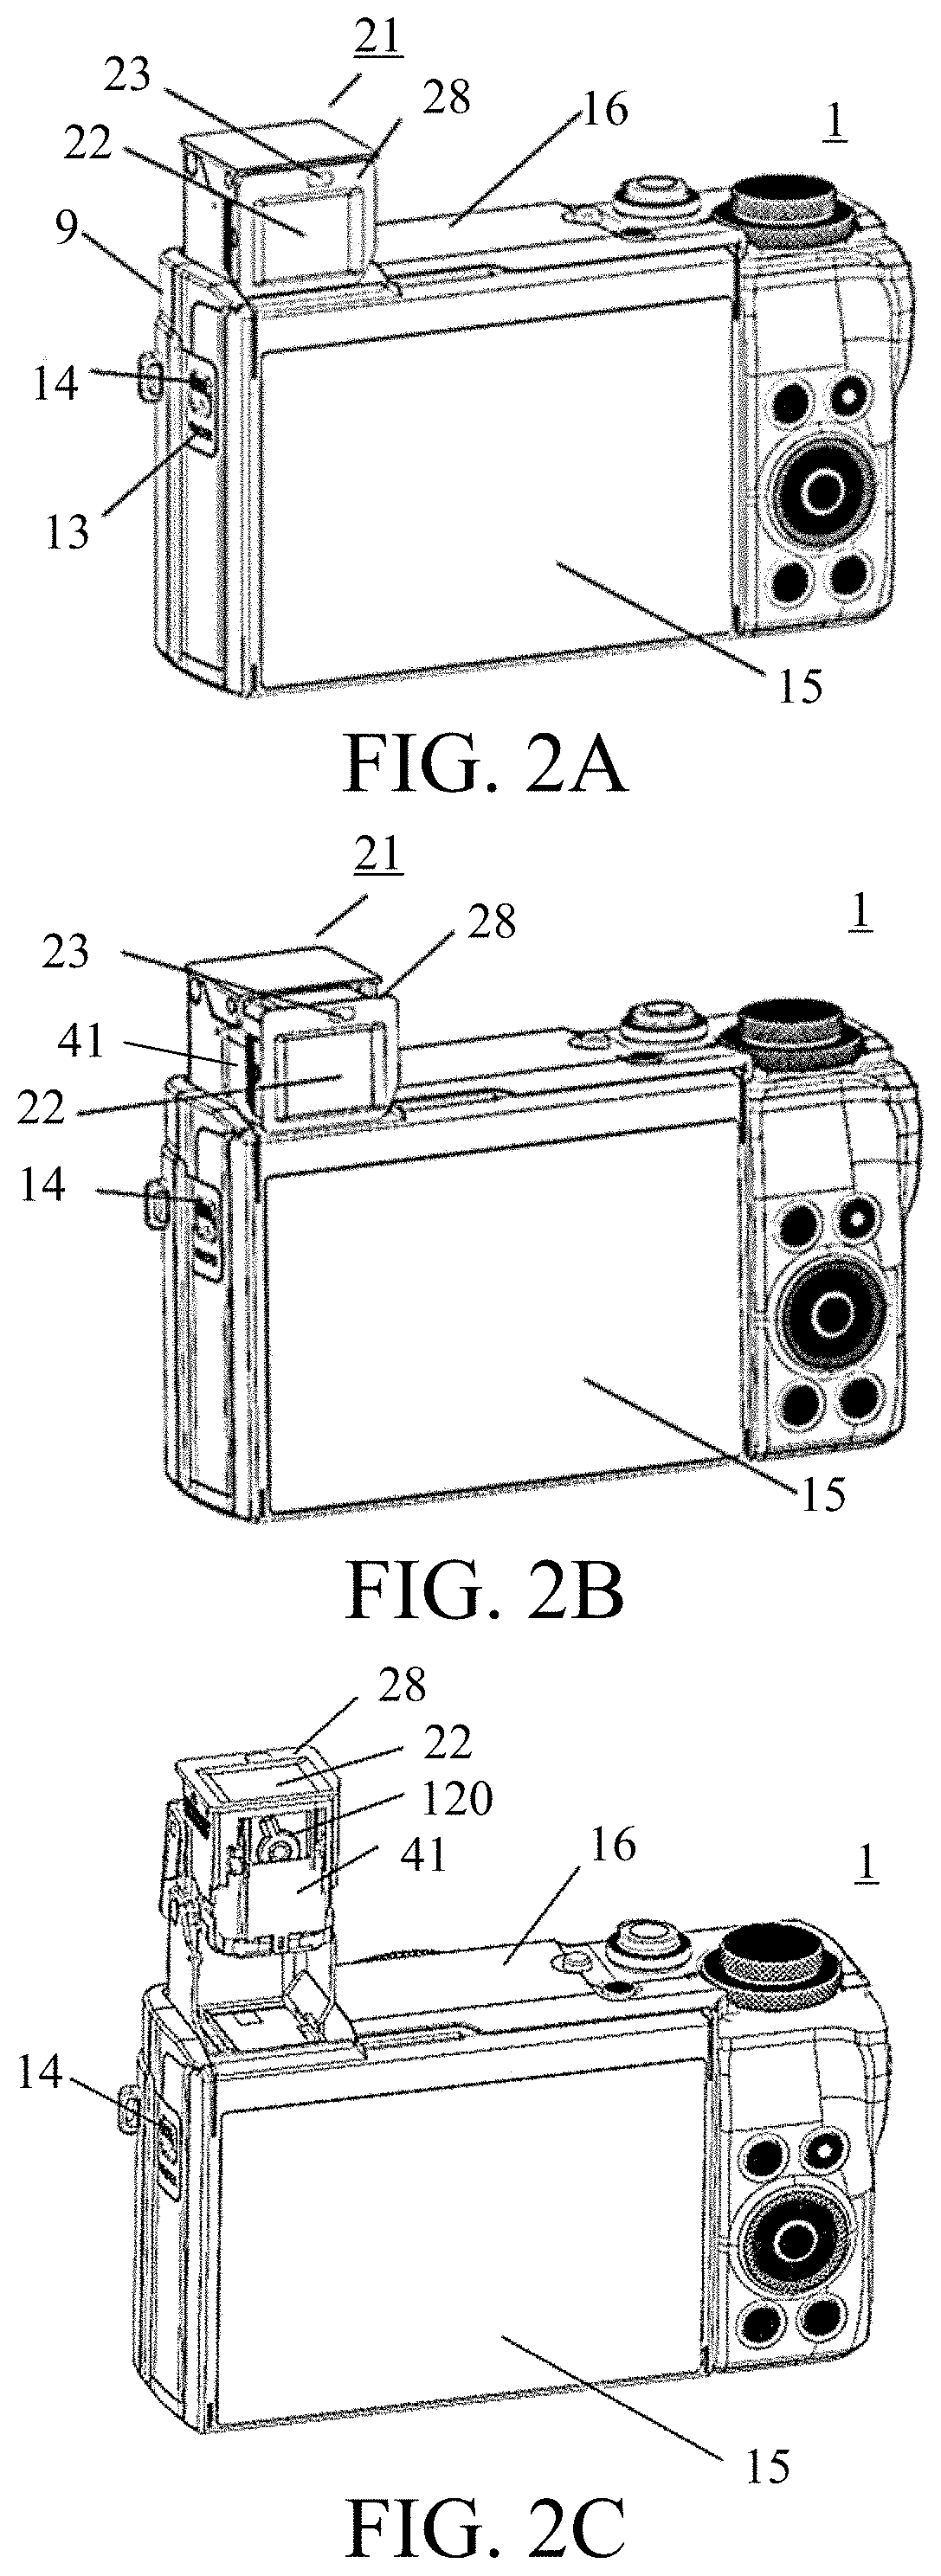 Image-capturing apparatus